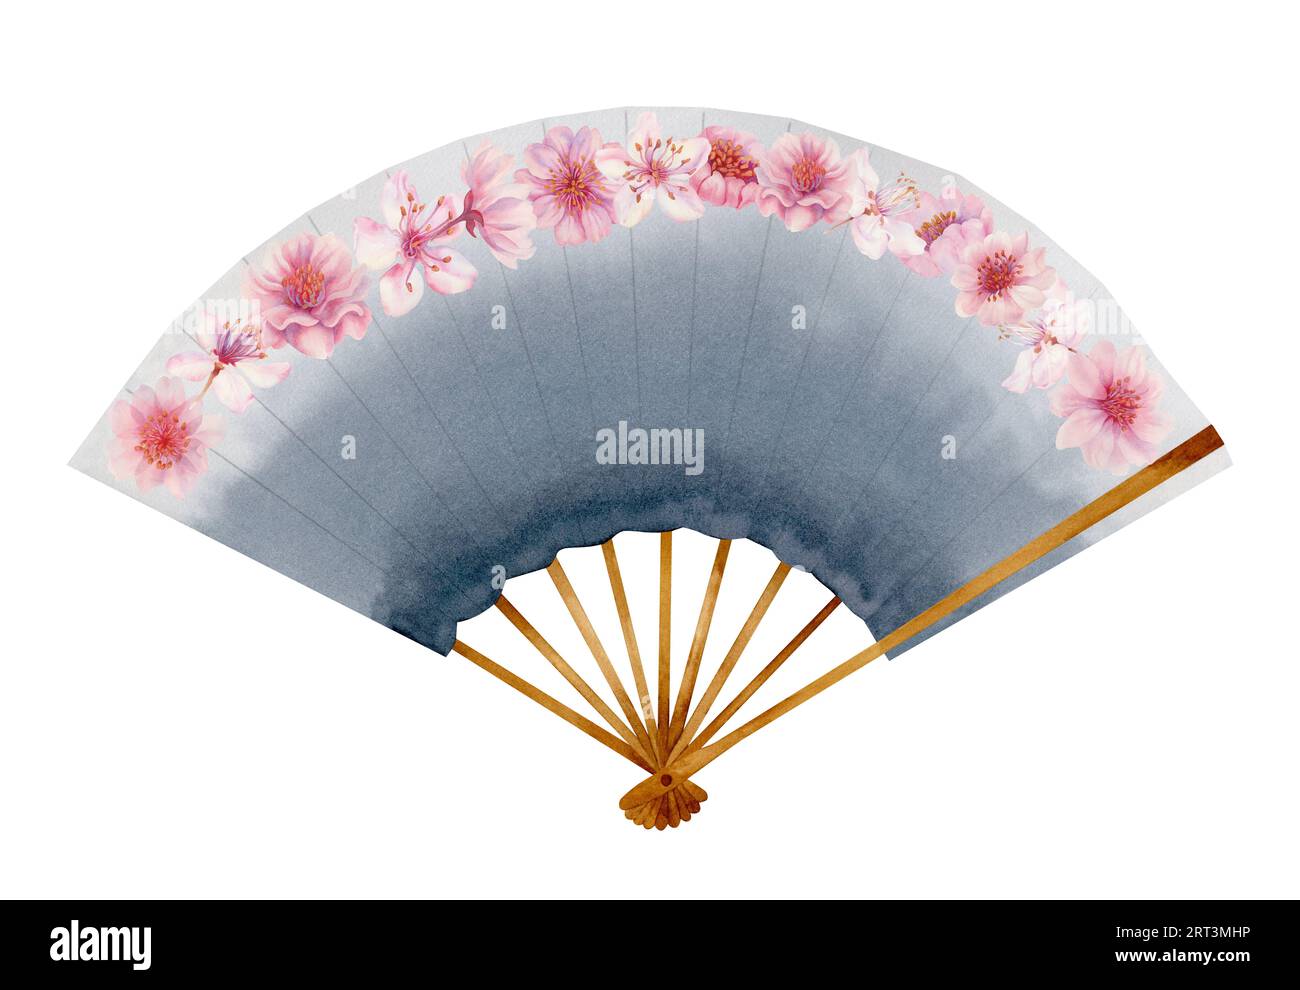 Aquarell-Illustration eines grauen, offenen Papierfächers mit Kirschblüten. Element isoliert auf weißem Hintergrund Stockfoto